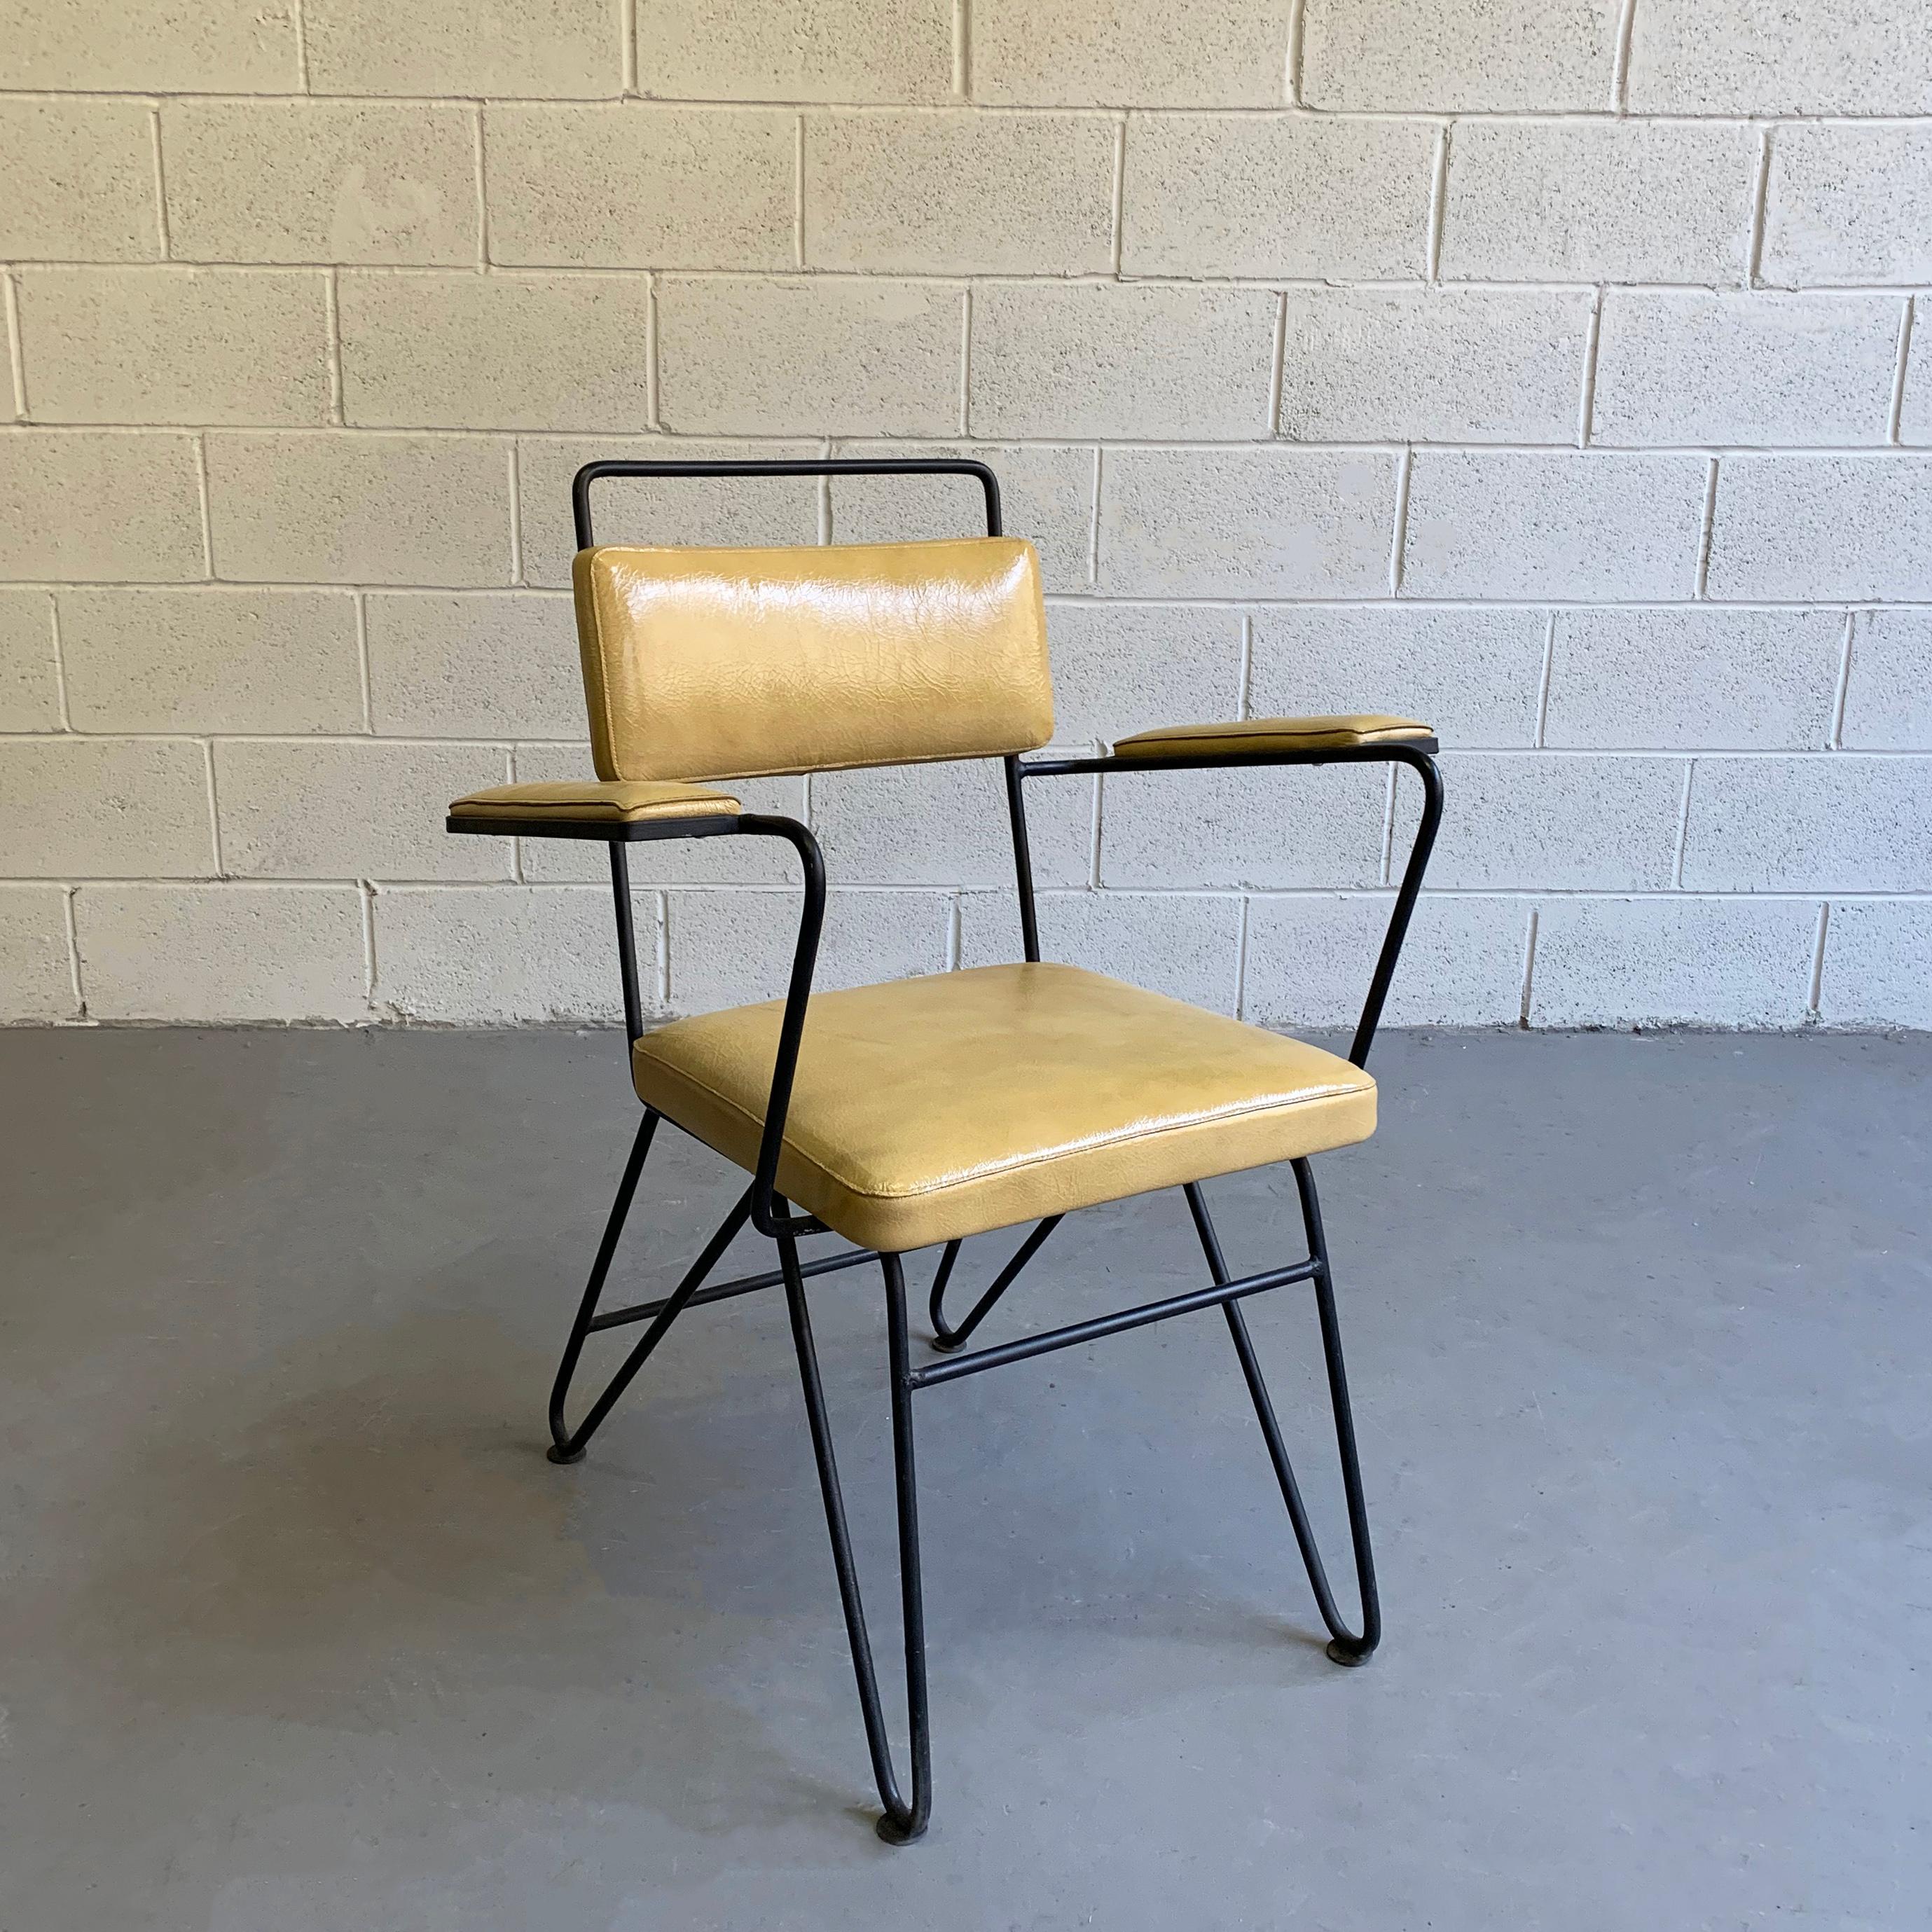 Ce superbe fauteuil moderne du milieu du siècle, attribué à Dan Johnson pour Pacific Iron, présente un cadre en fer forgé hautement stylisé et une tapisserie en cuir verni froissé de couleur moutarde. Une technique de rembourrage unique, à point